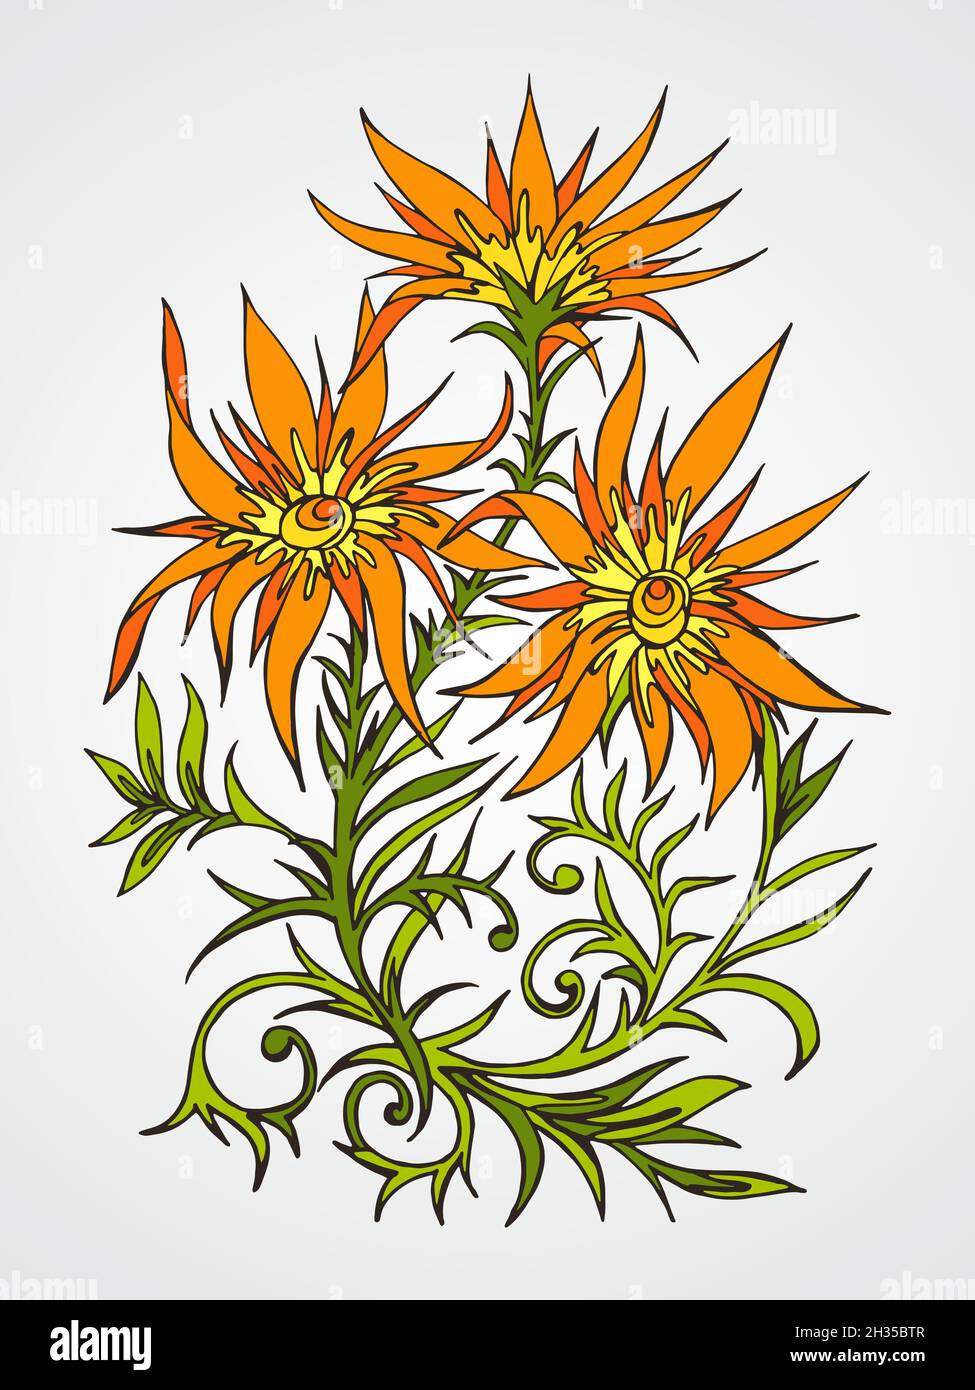 Disegno vettoriale a mano con fiori. In arancione e verde. Illustrazione Vettoriale